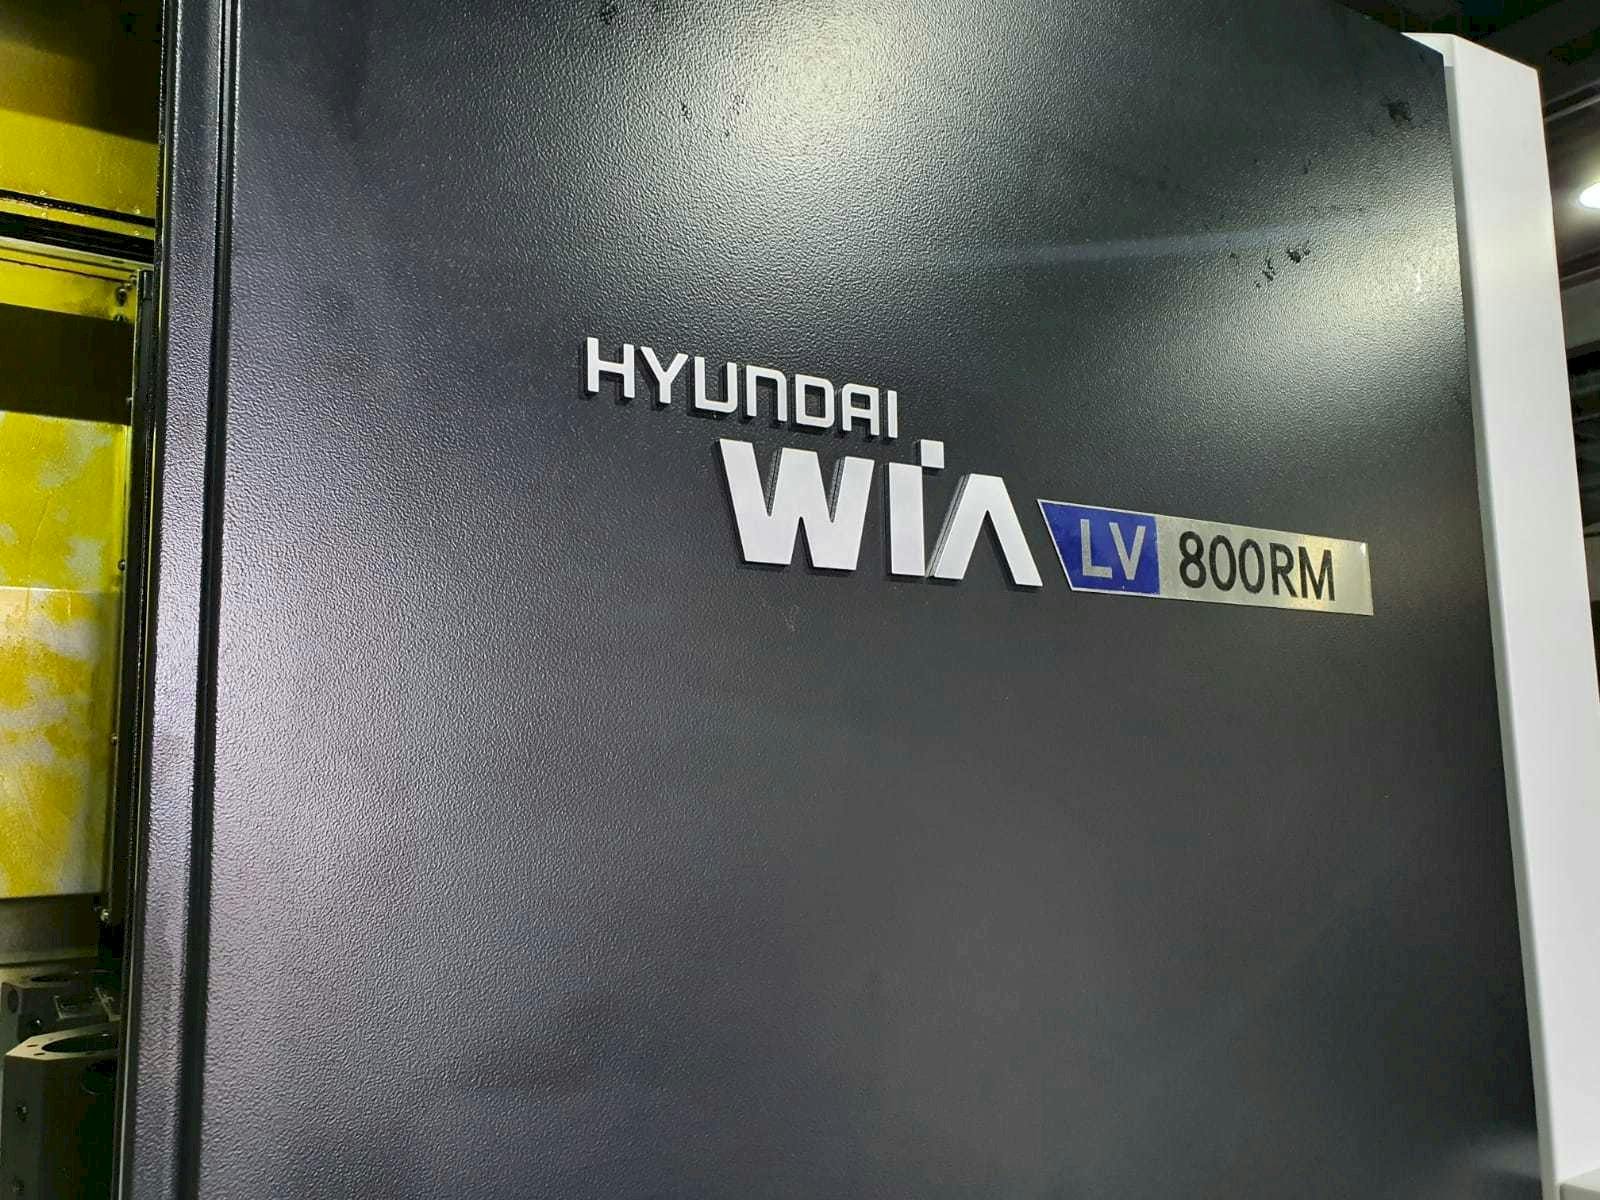 Čelní pohled  na Hyundai Wia LV800RM  stroj